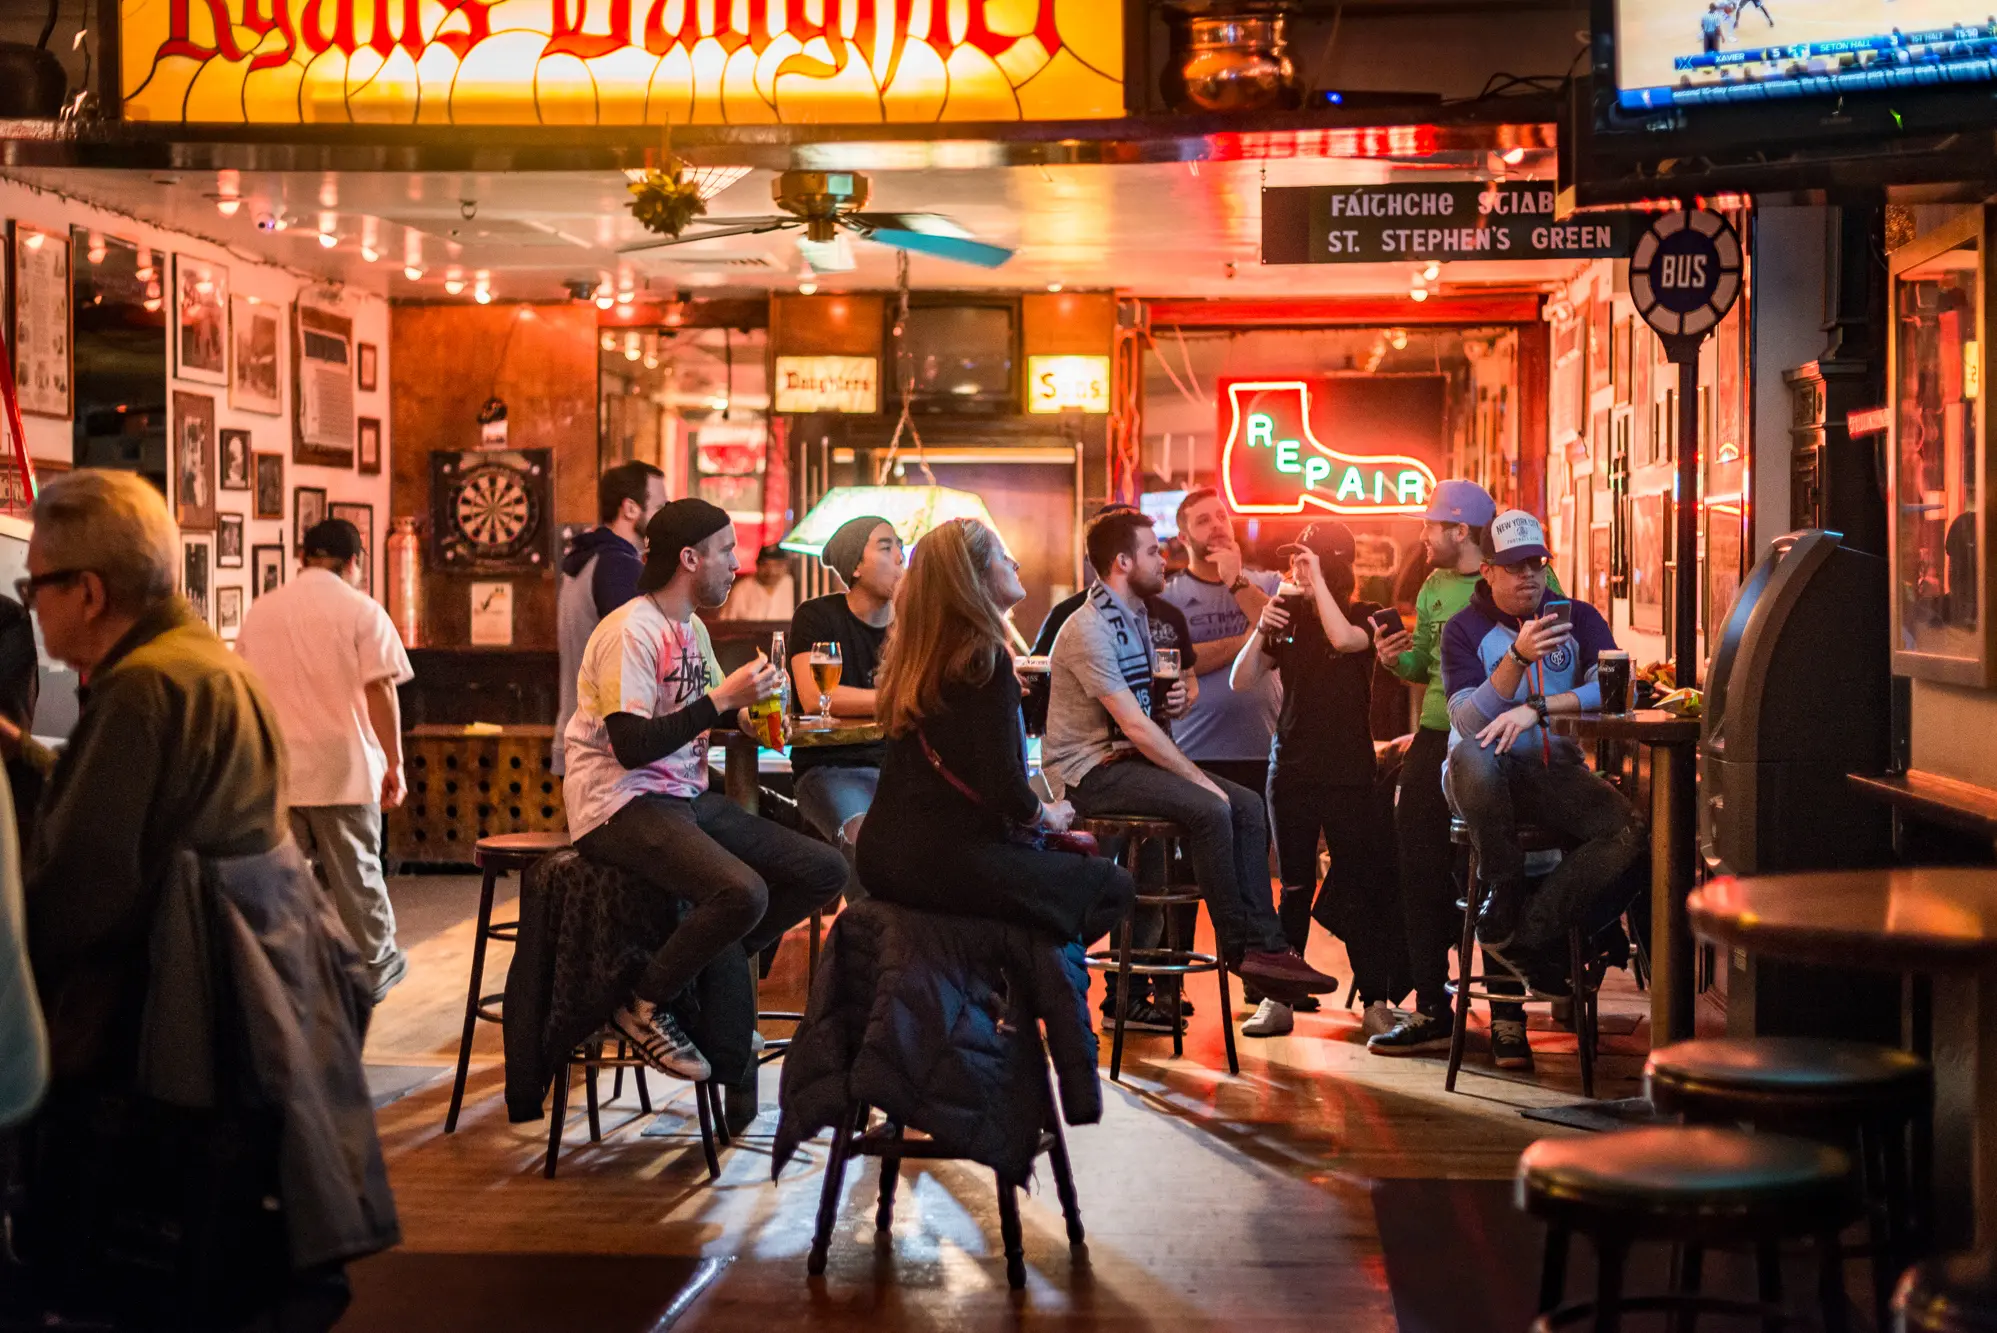 Legends  Bars in Midtown West, New York